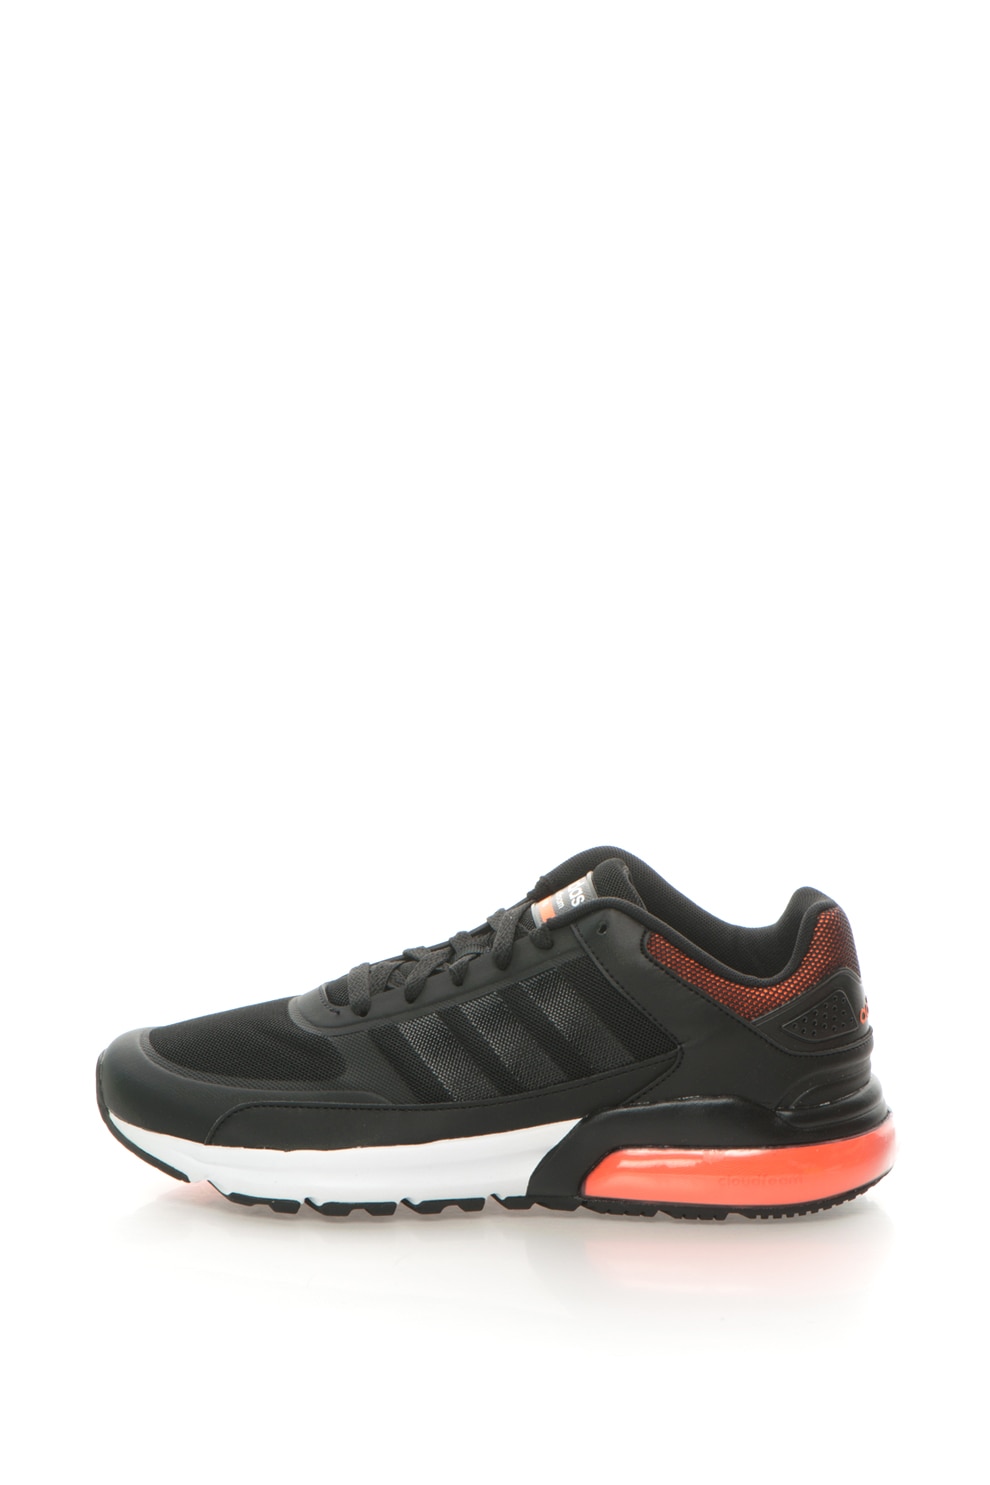 adidas NEO, Cloudfoam 9 TIS Fekete Sneakers Cipő, 41 1/3 - eMAG.hu